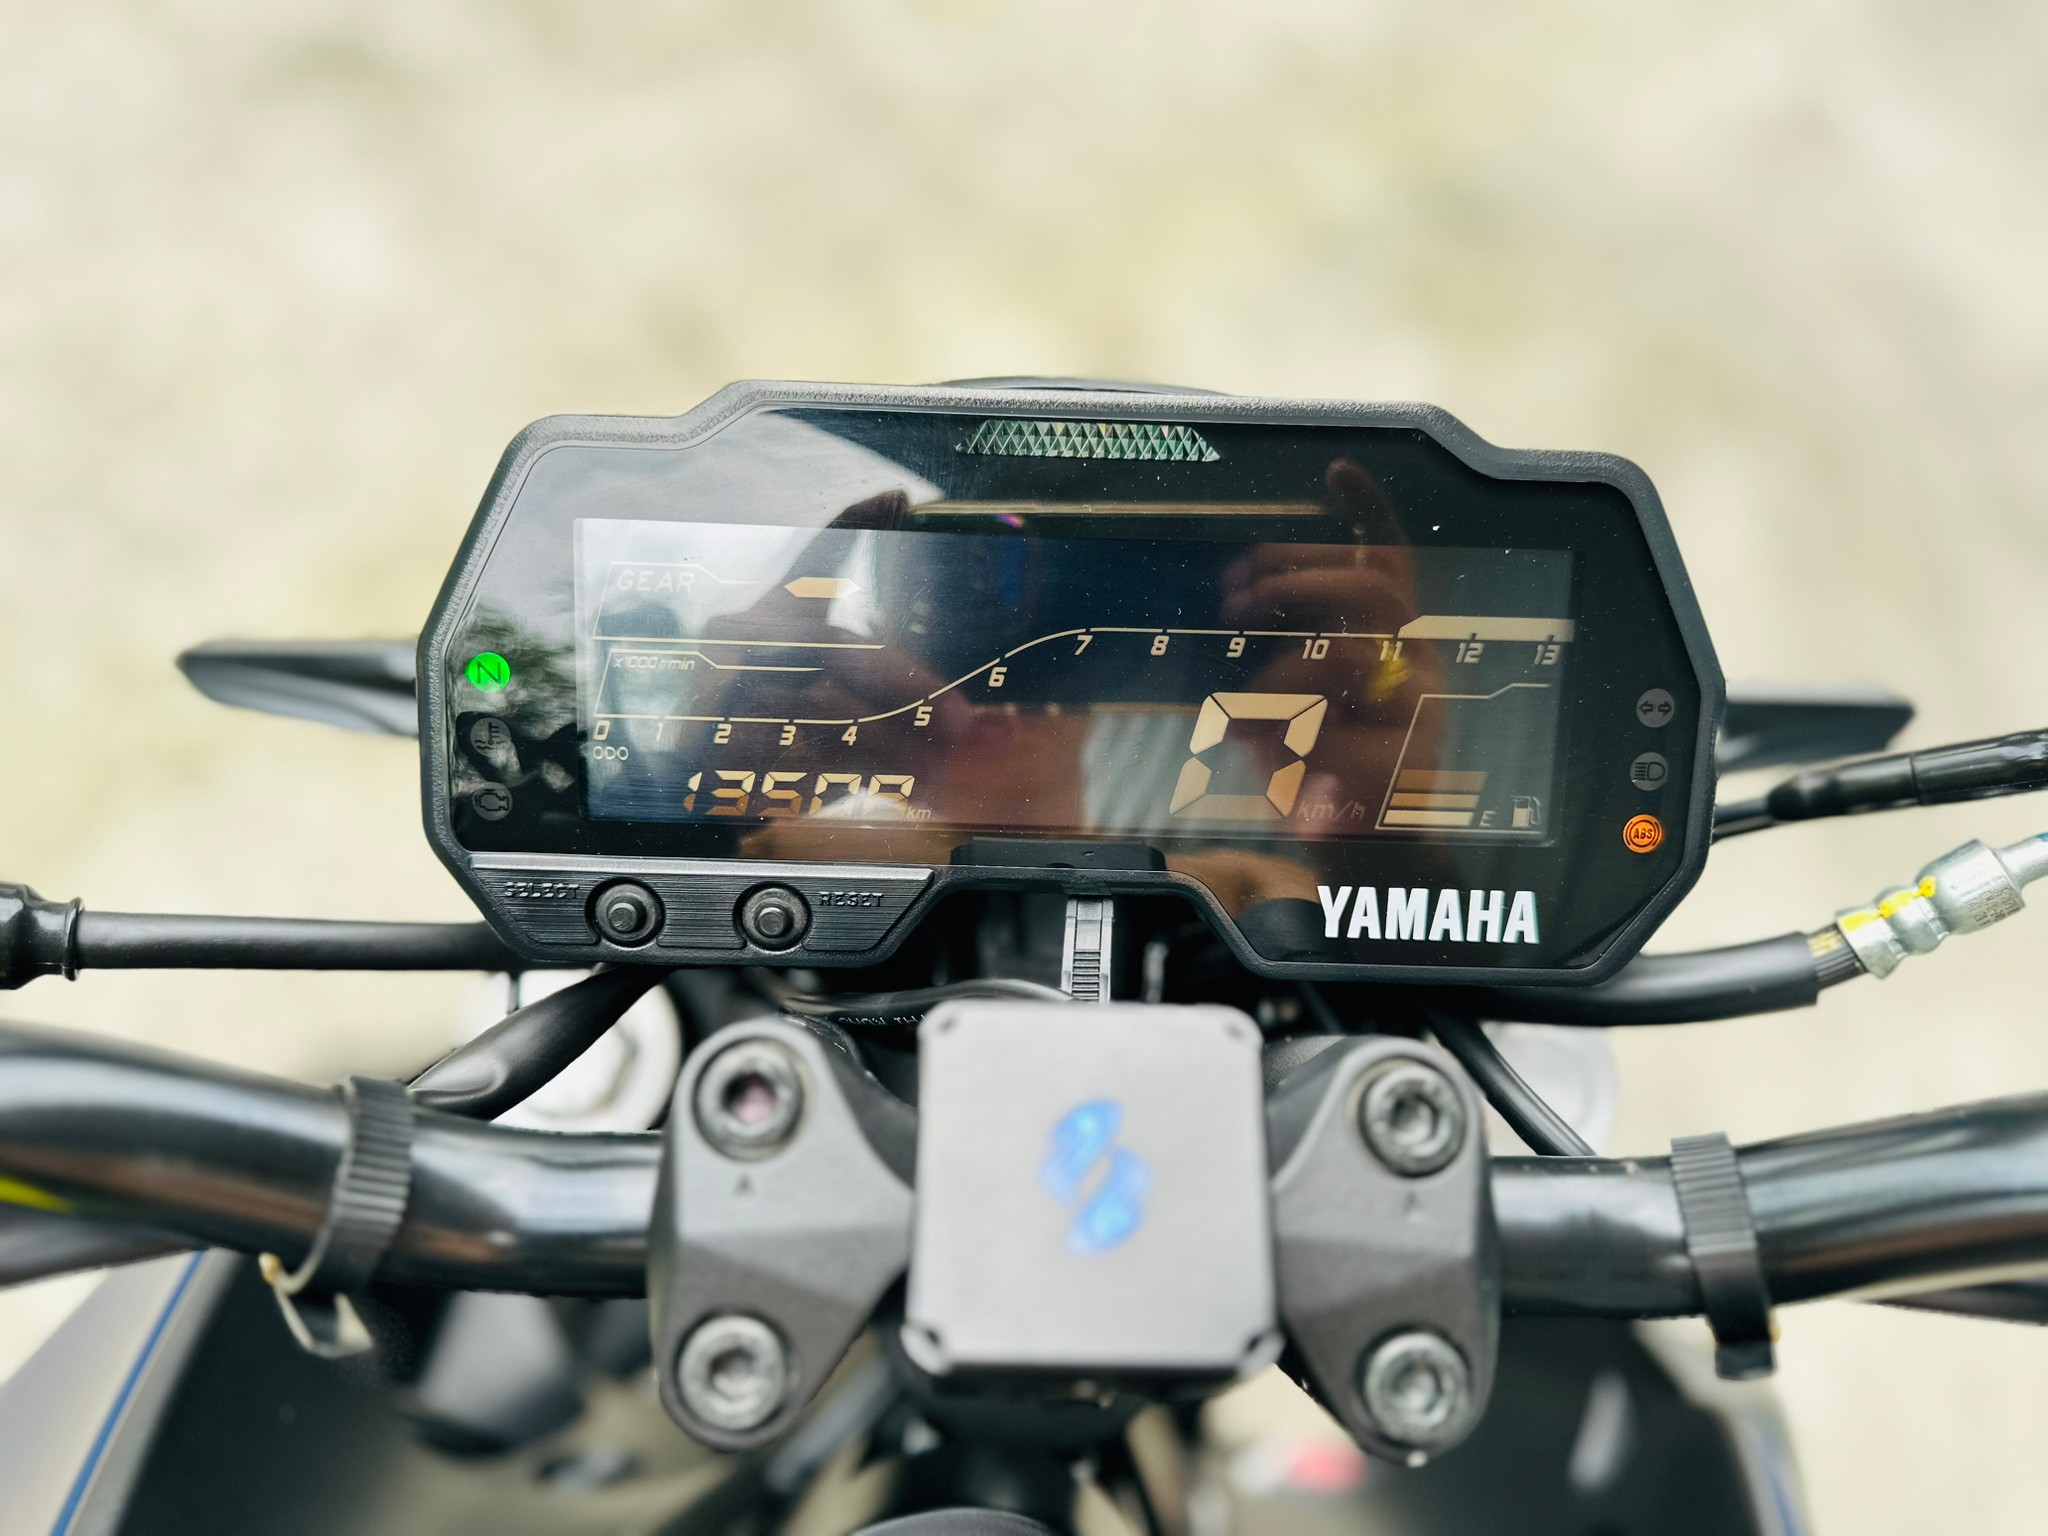 YAMAHA MT-15 - 中古/二手車出售中 Yamaha MT-15 可協助貸款 | 摩托販